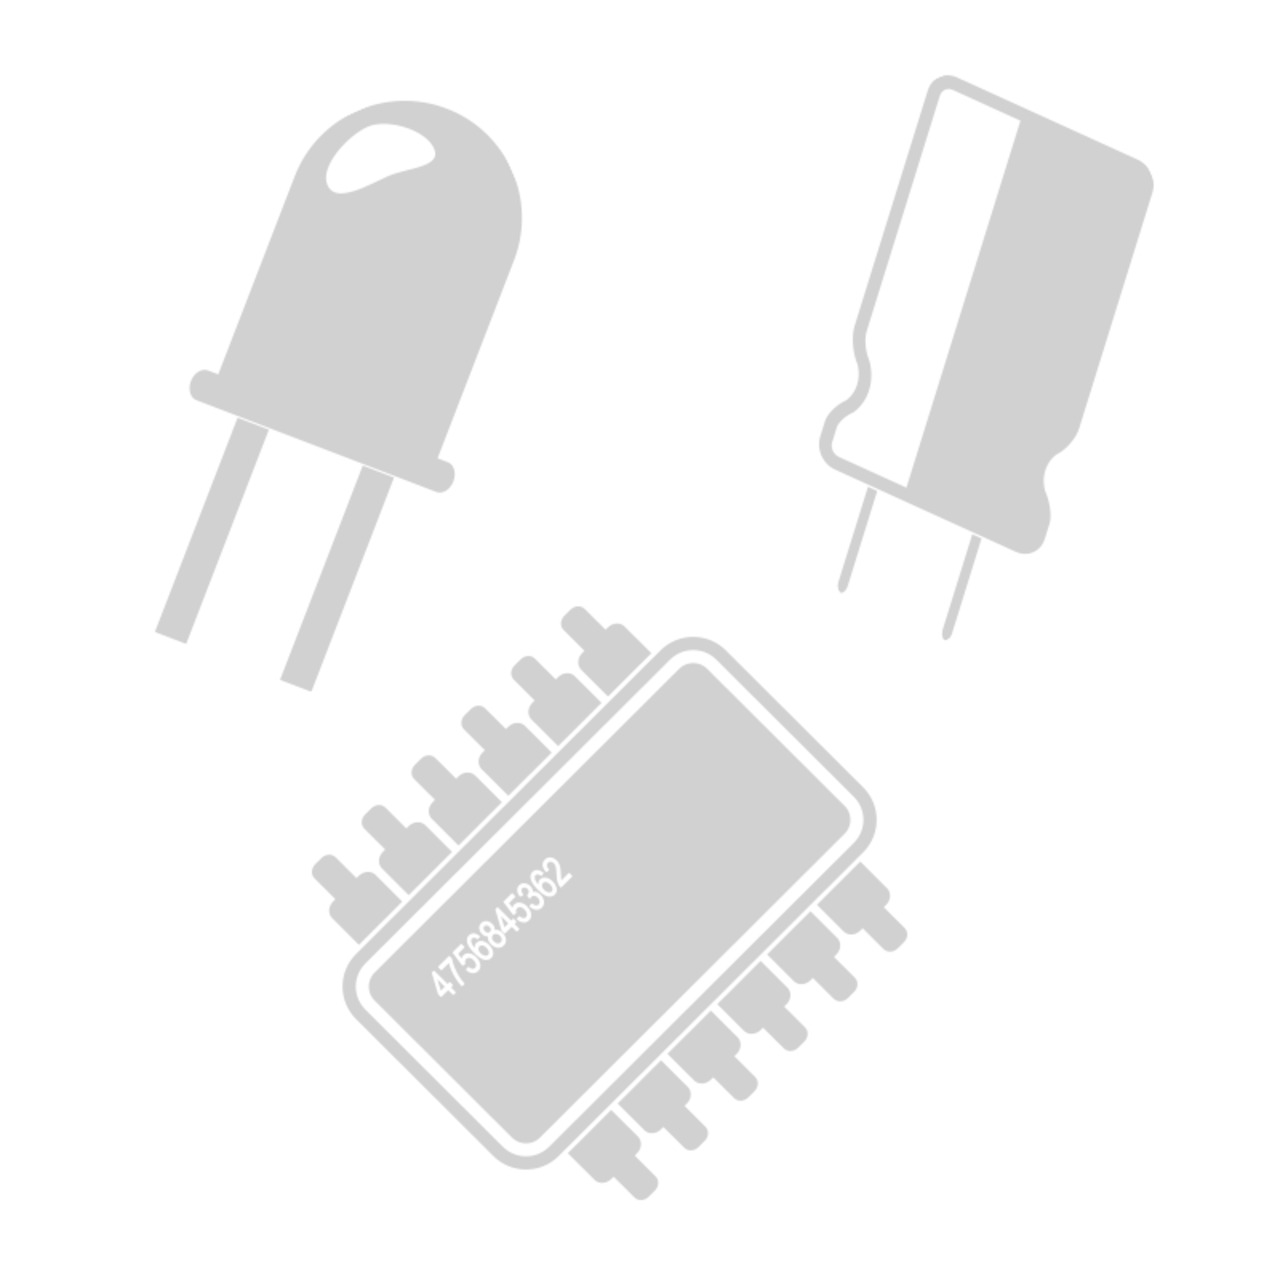 SMD-Chip-LEDs- Weiss- Bauform 1206- 10er Pack unter Komponenten